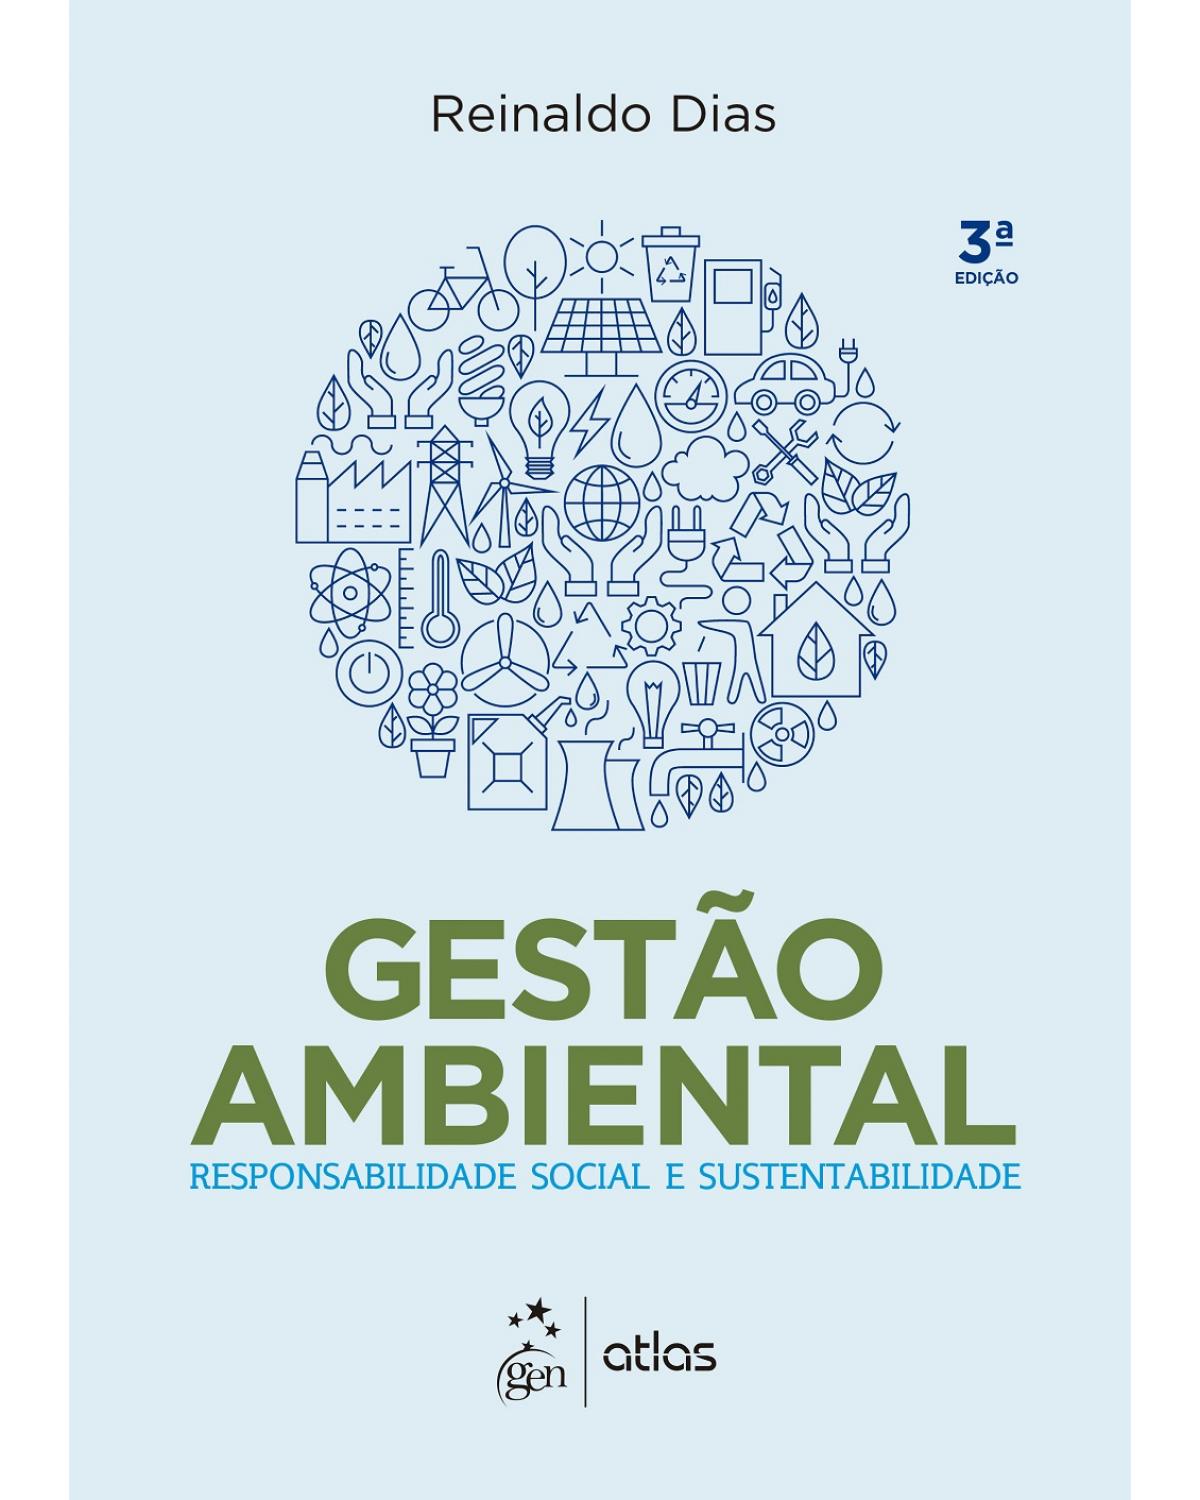 Gestão ambiental - Responsabilidade social e sustentabilidade - 3ª Edição | 2017